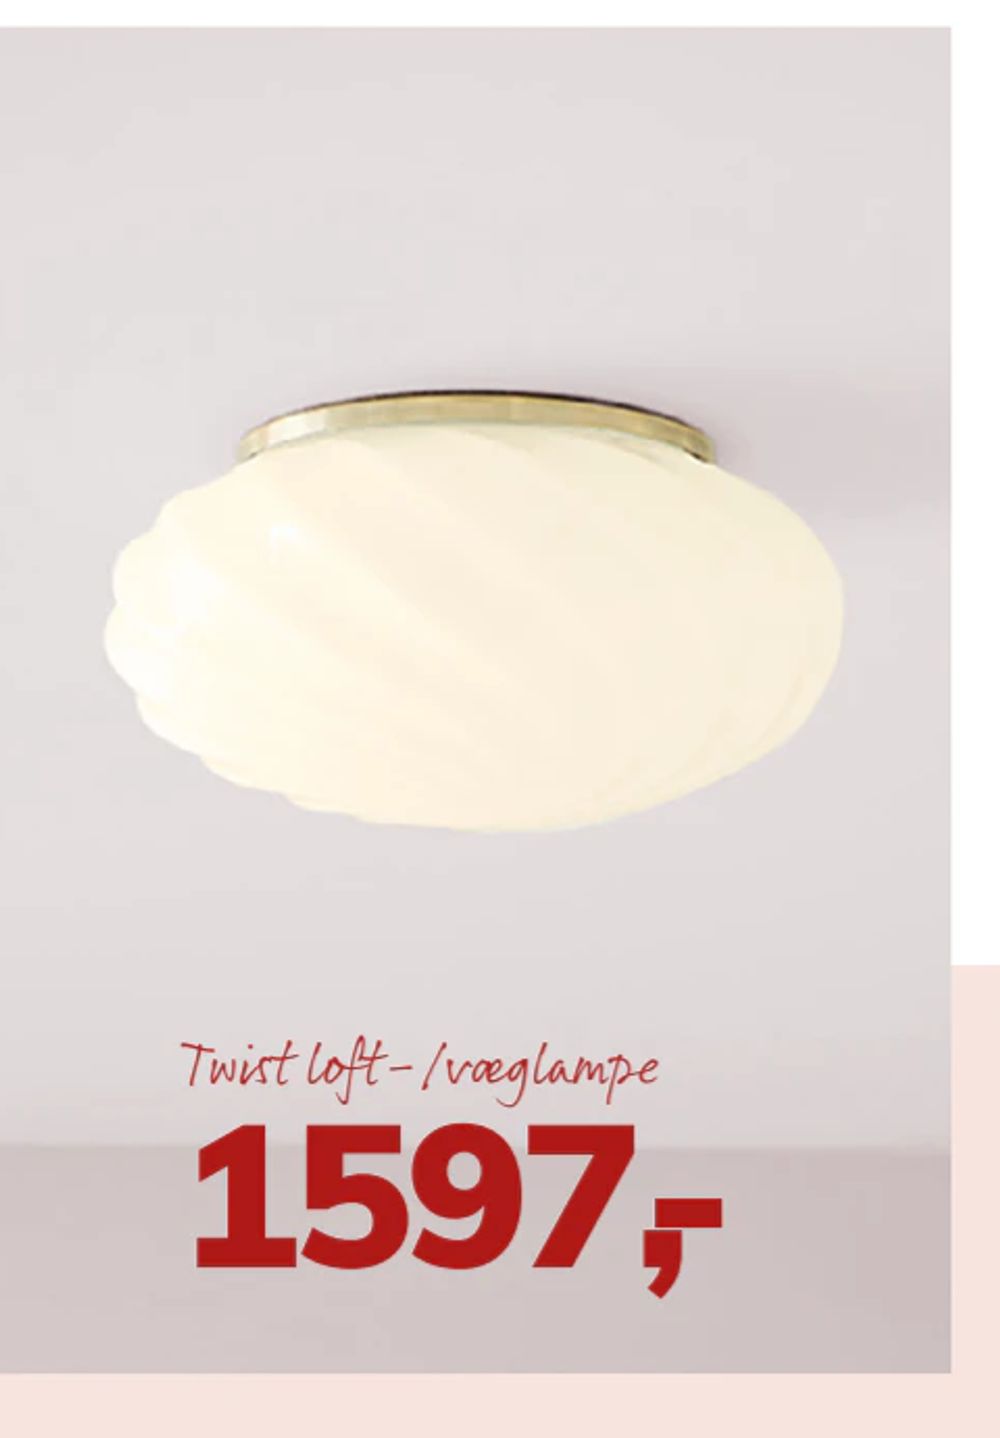 Tilbud på Twist loft-/væglampe fra Daells Bolighus til 1.597 kr.